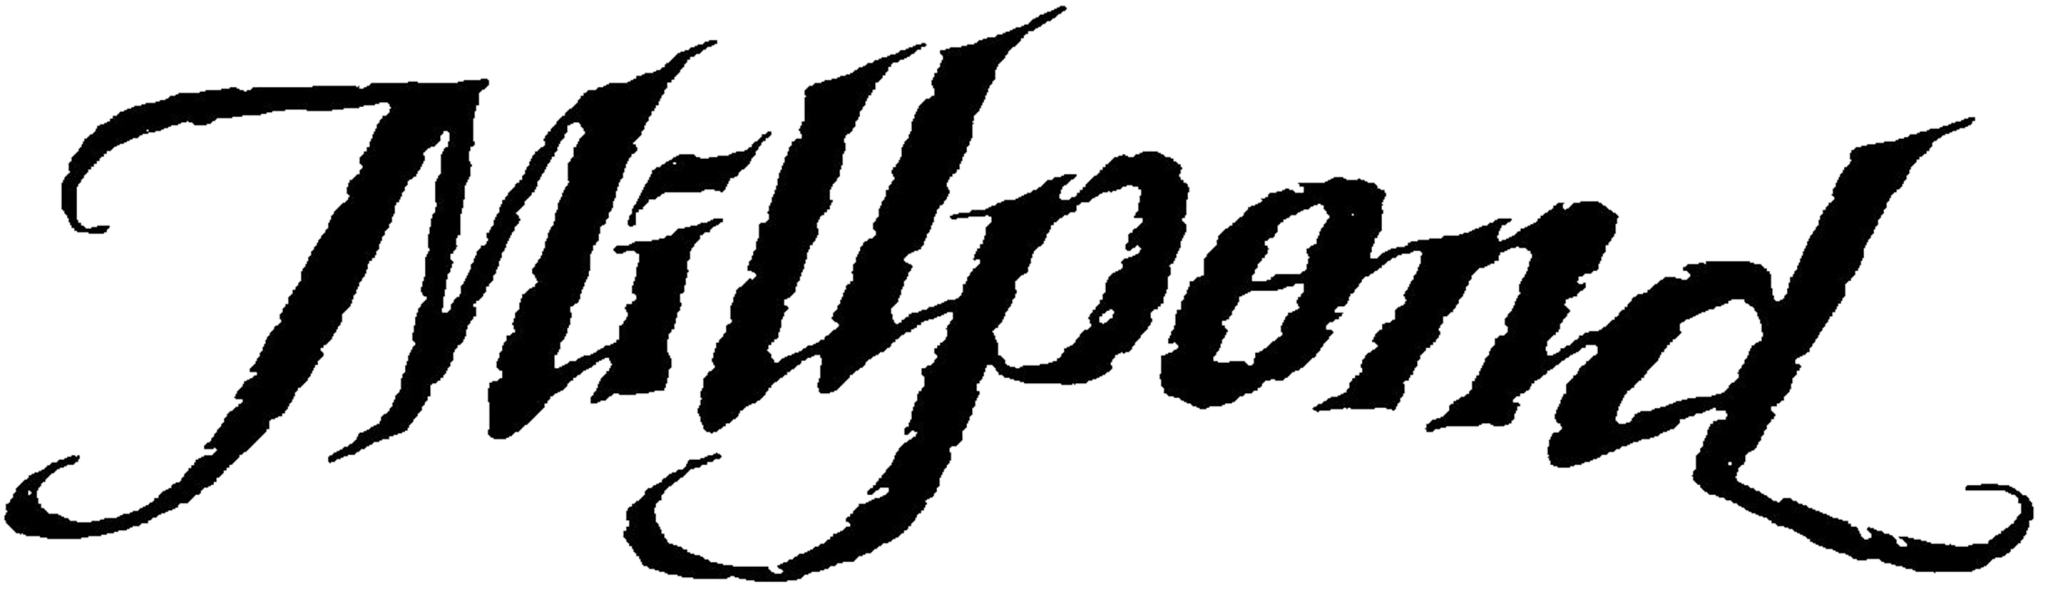 Millpond Music Festival Logo